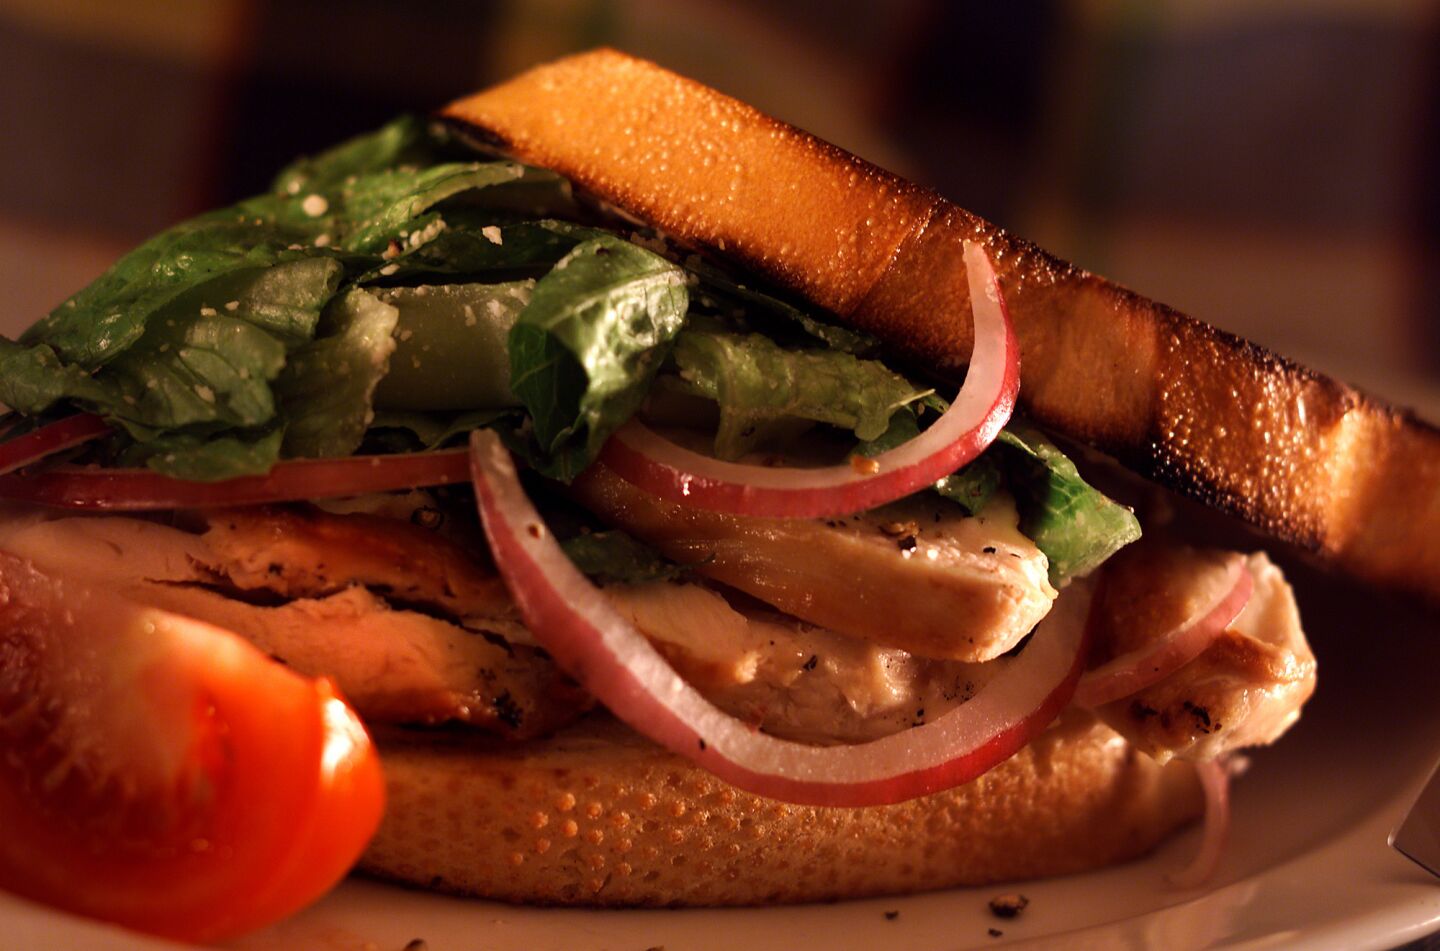 Caesar salad sandwiches with chicken.